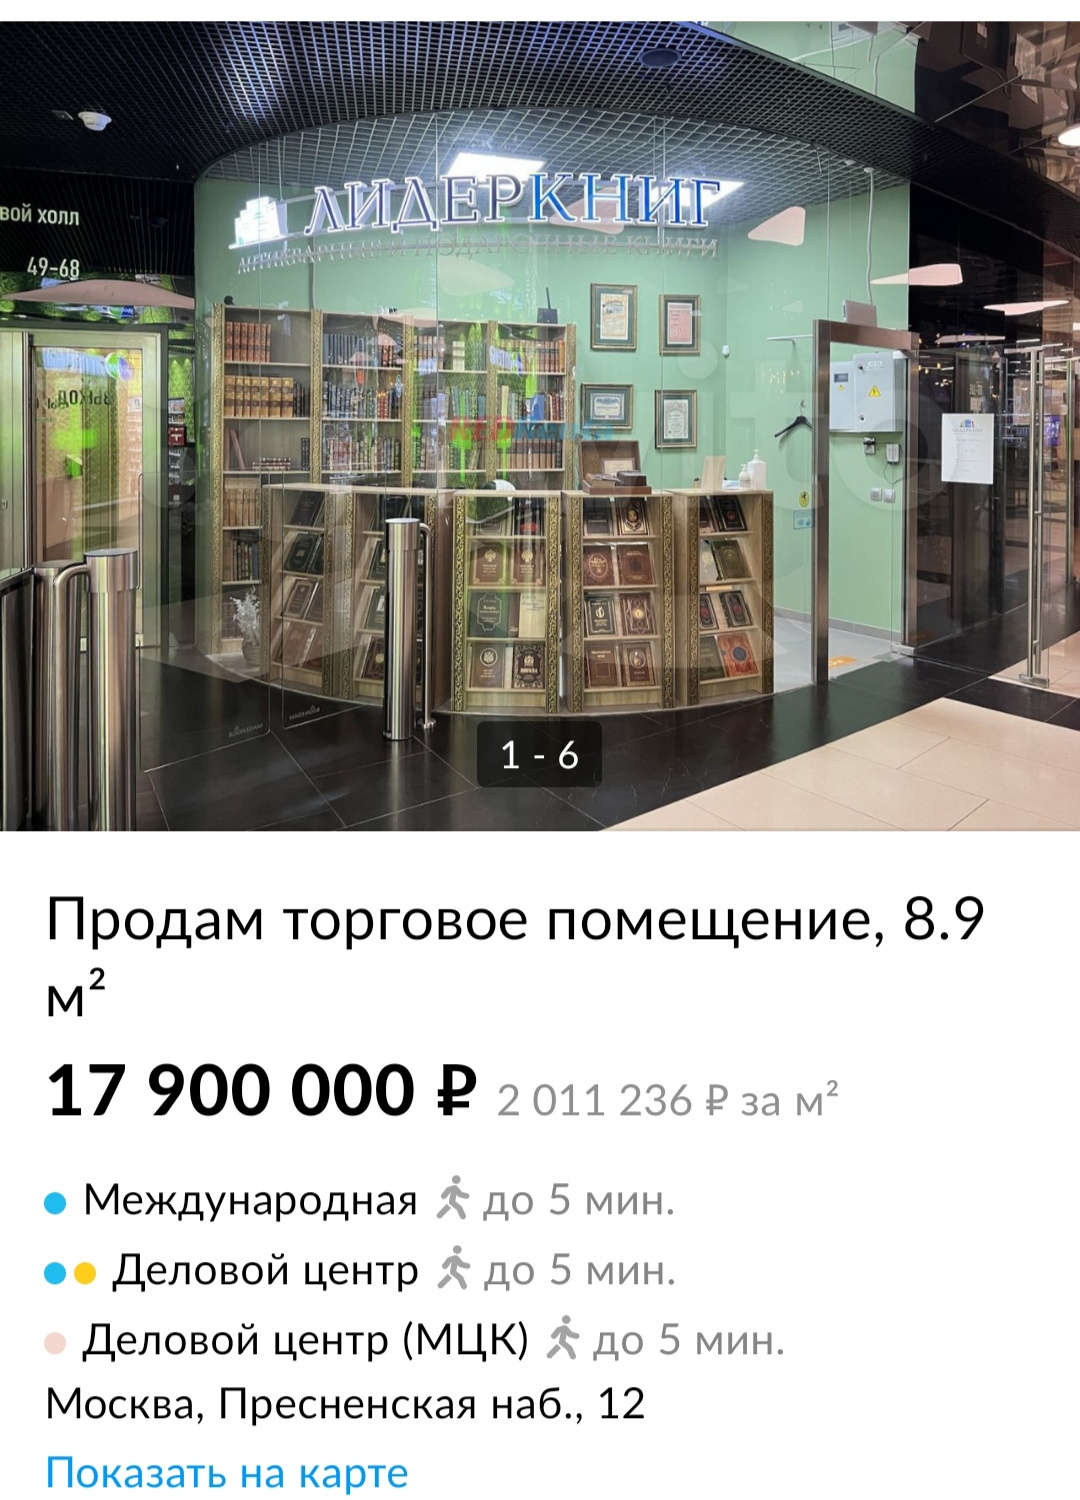 Место площадью 8,9 кв. м в торговой галерее башни стоит около 18 миллионов рублей